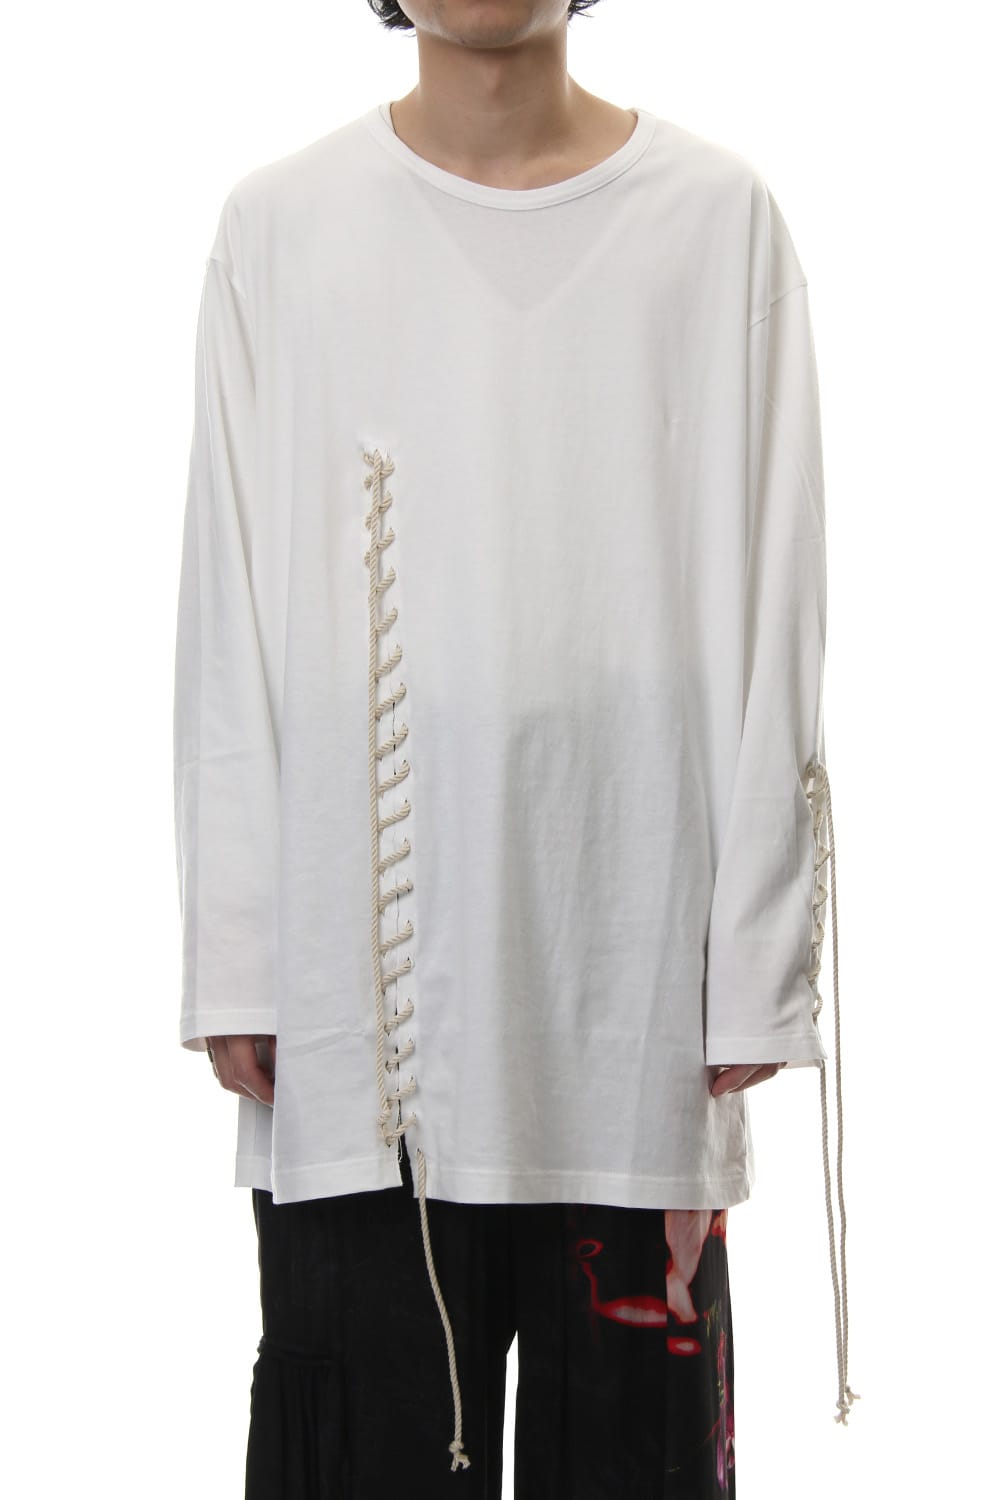 HH-T30-083-white, Lace Up Round Neck Long Sleeve T Shirt, Yohji Yamamoto